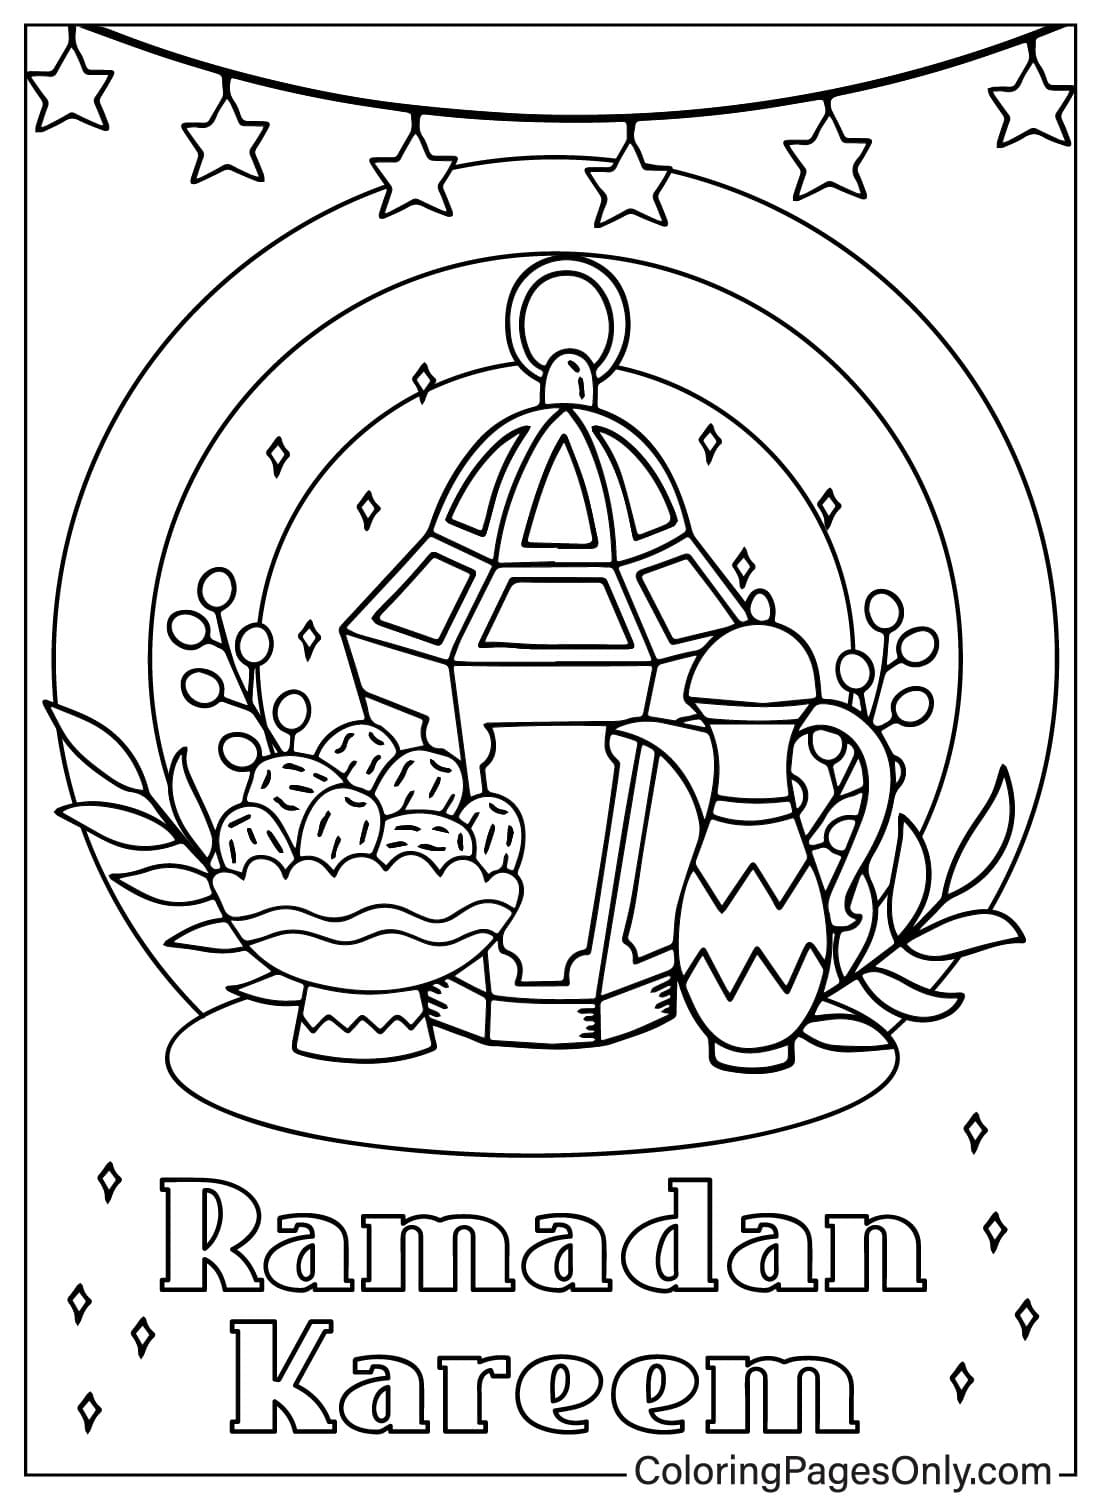 Página para colorear de Ramadán gratis de Ramadán